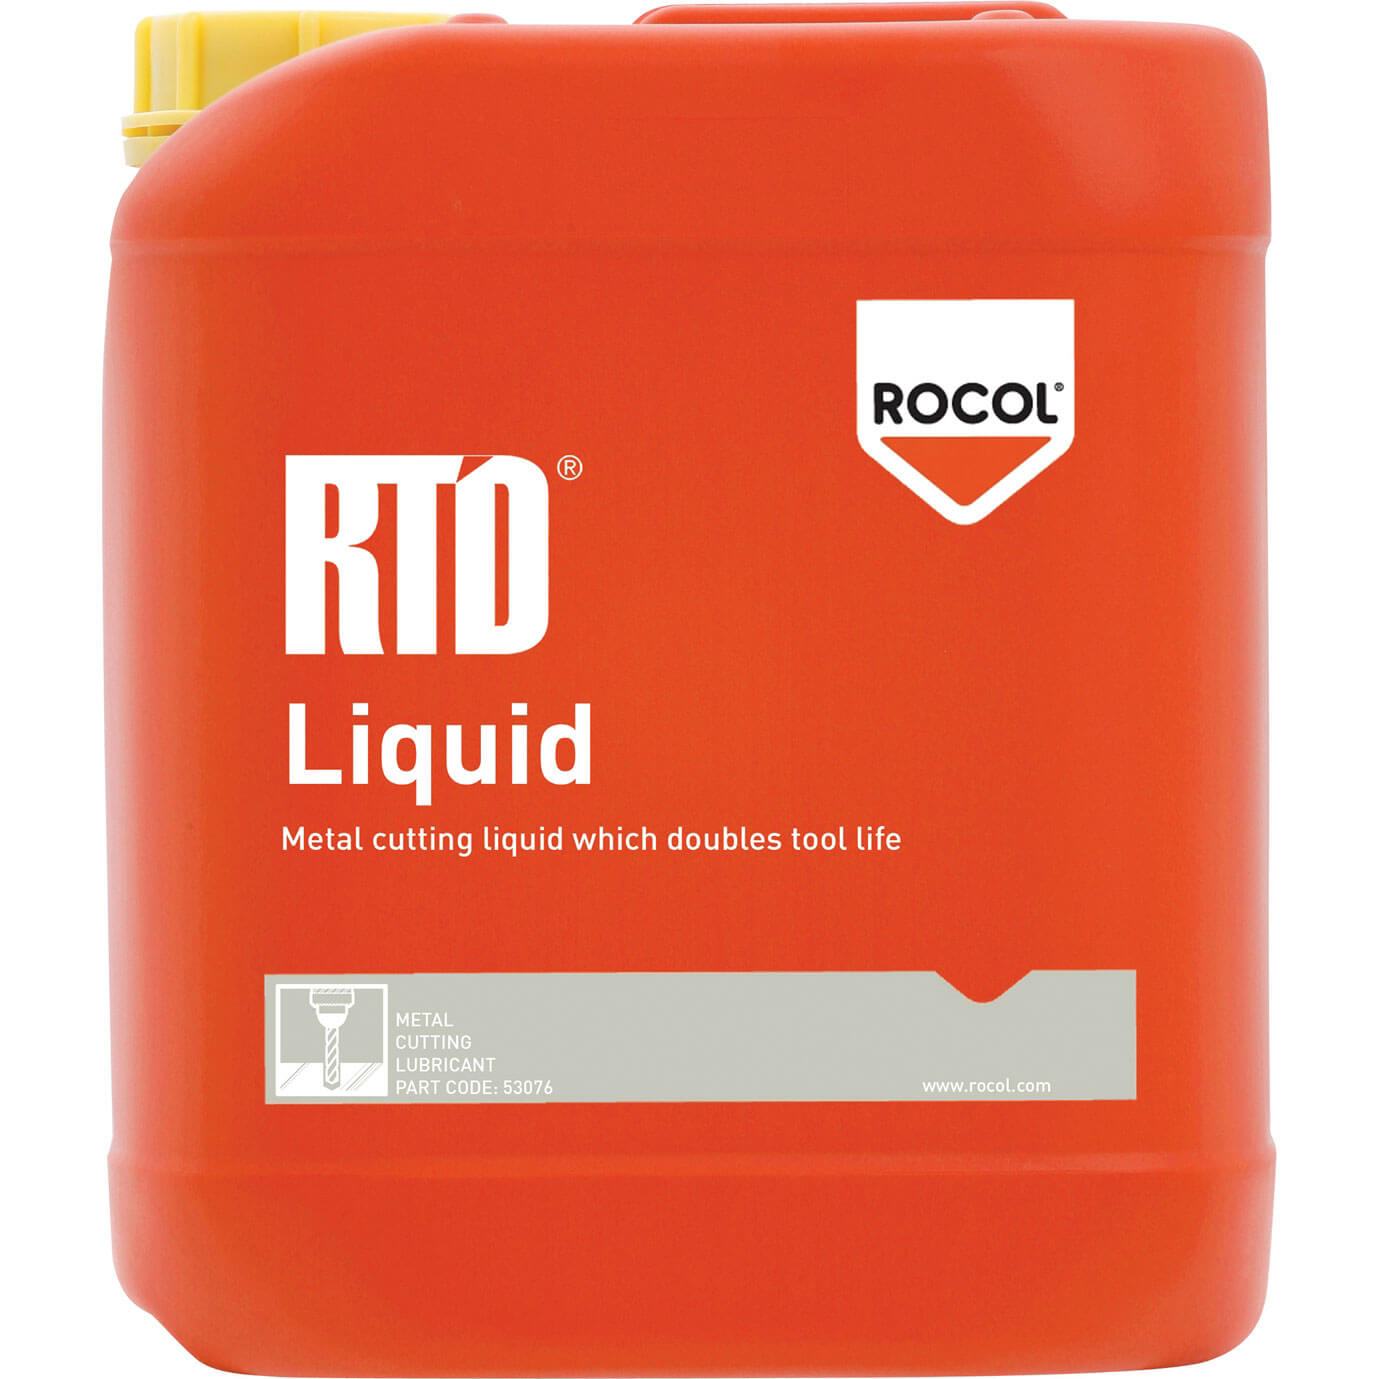 Photo of Rocol Rtd Metal Cutting Liquid 5l